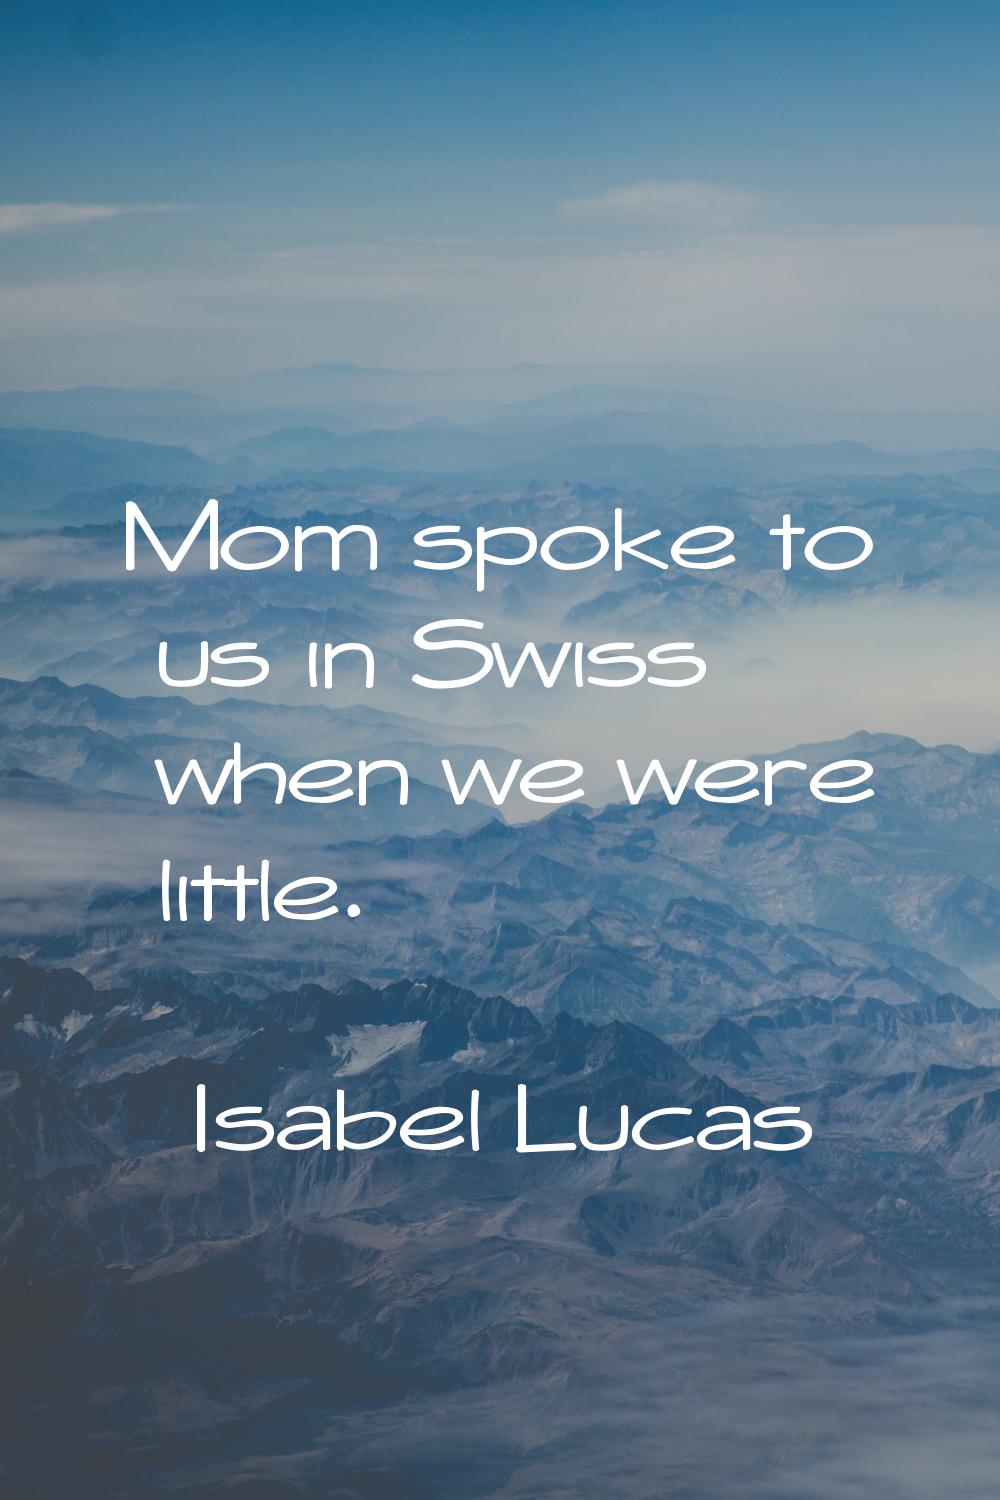 Mom spoke to us in Swiss when we were little.